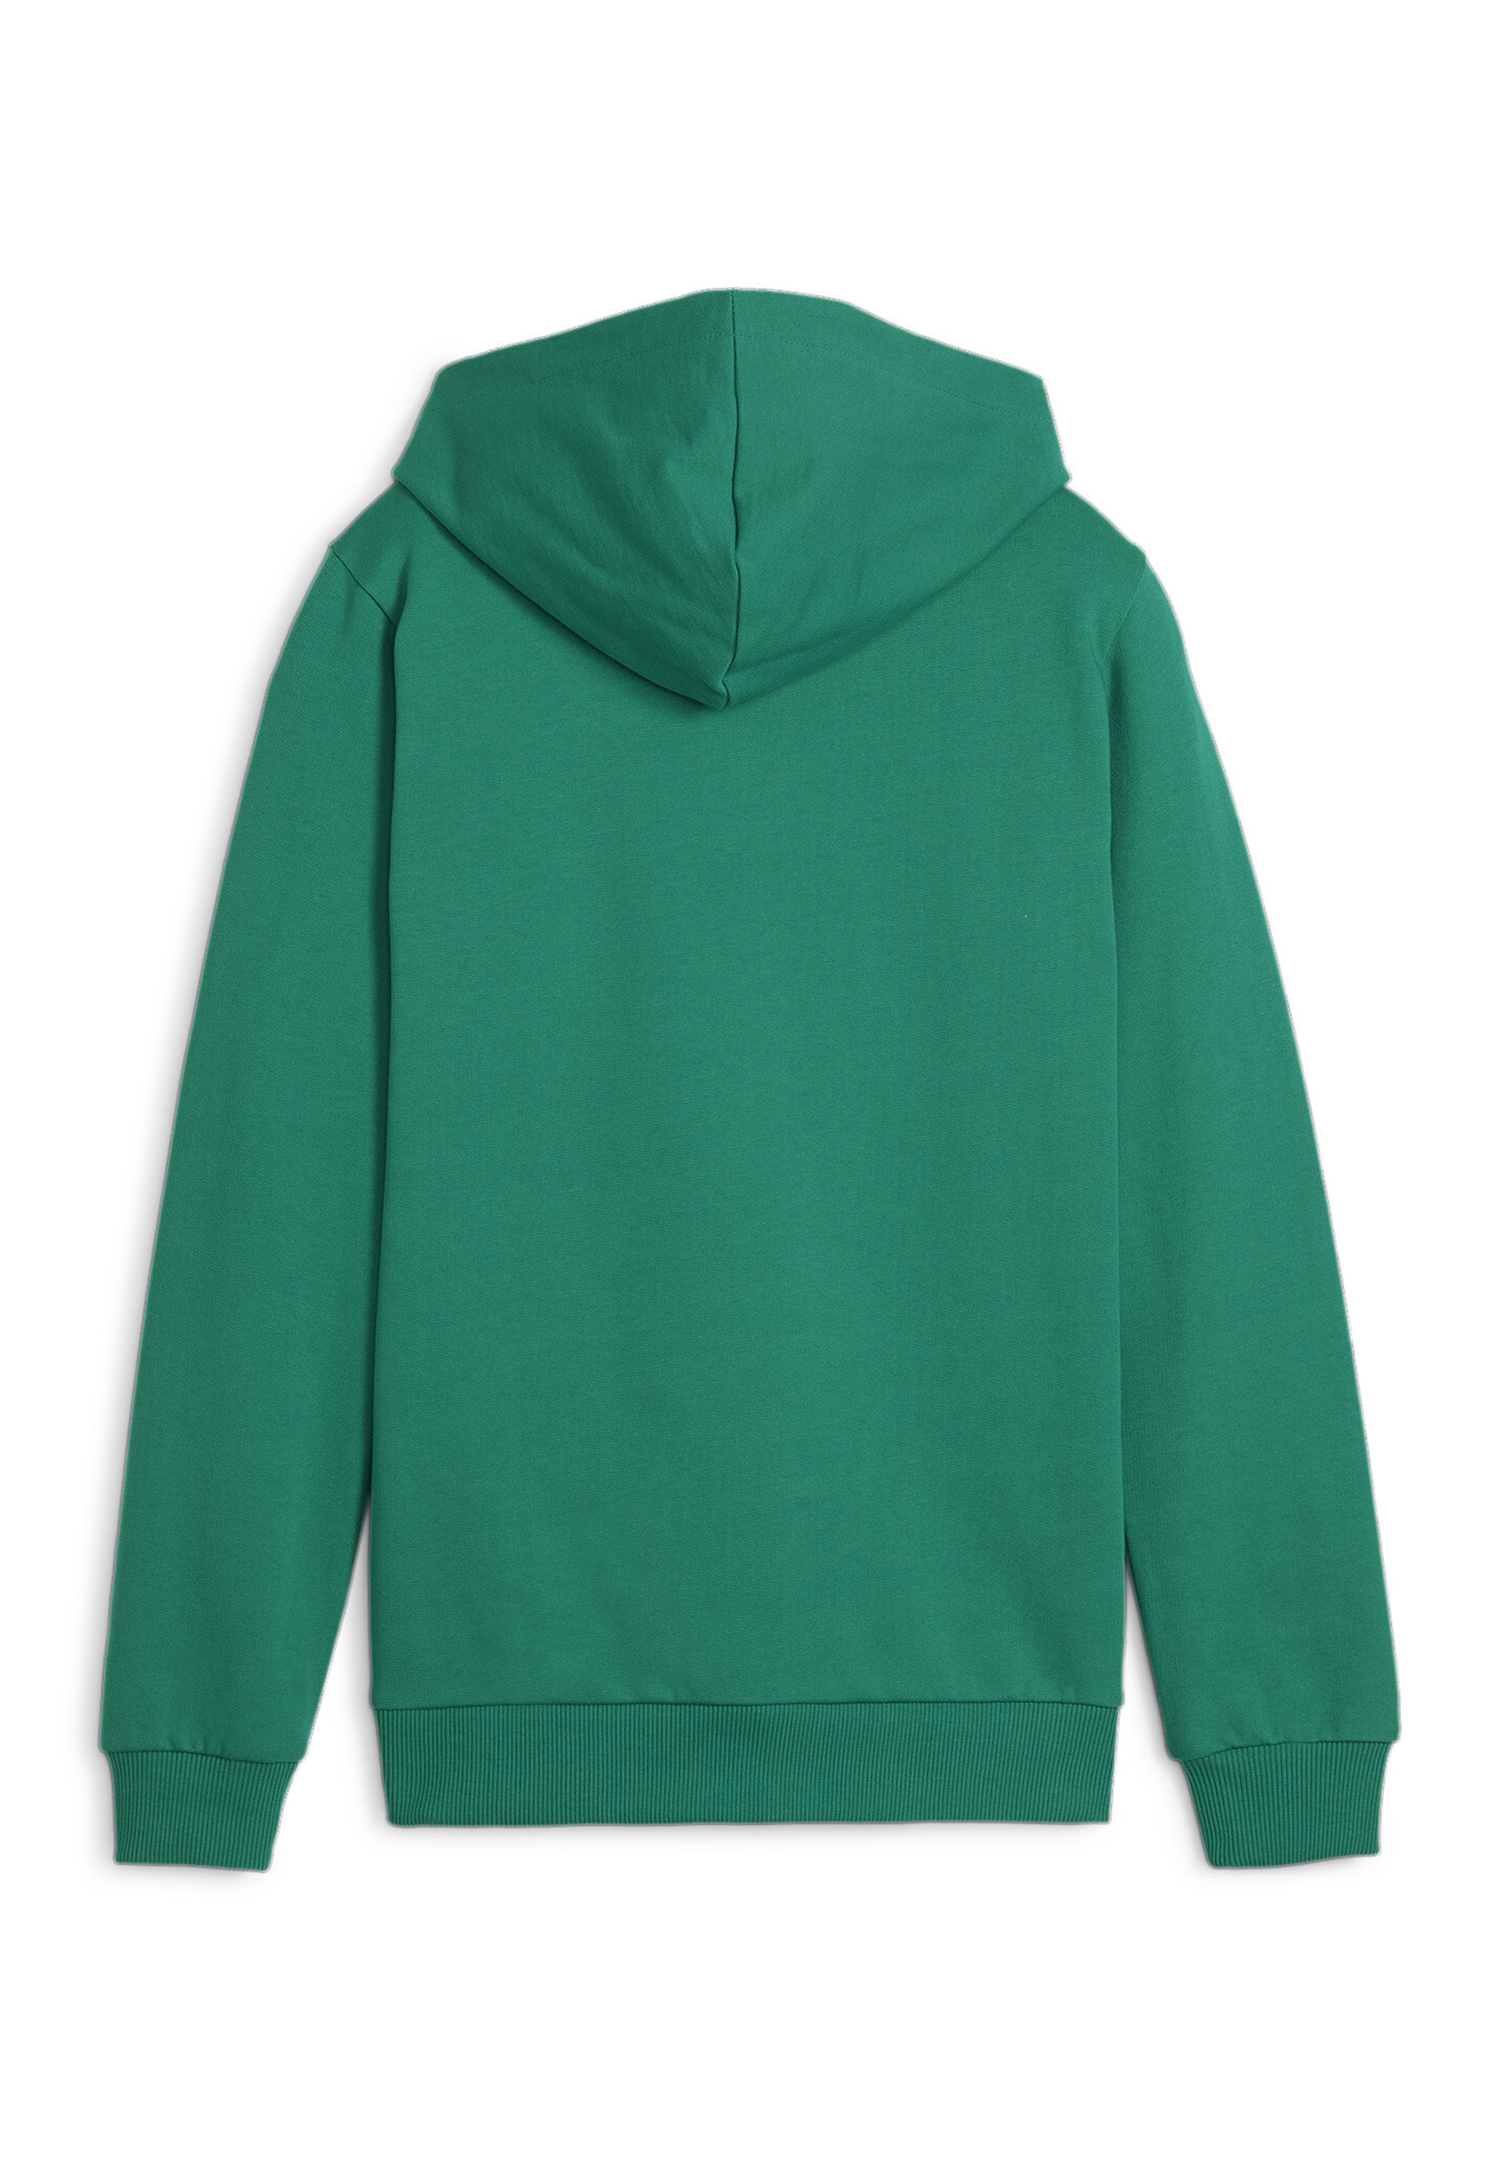 PUMA Kinder teamGOAL Casuals Hoody Sweatshirt Pullover 658619 grün 